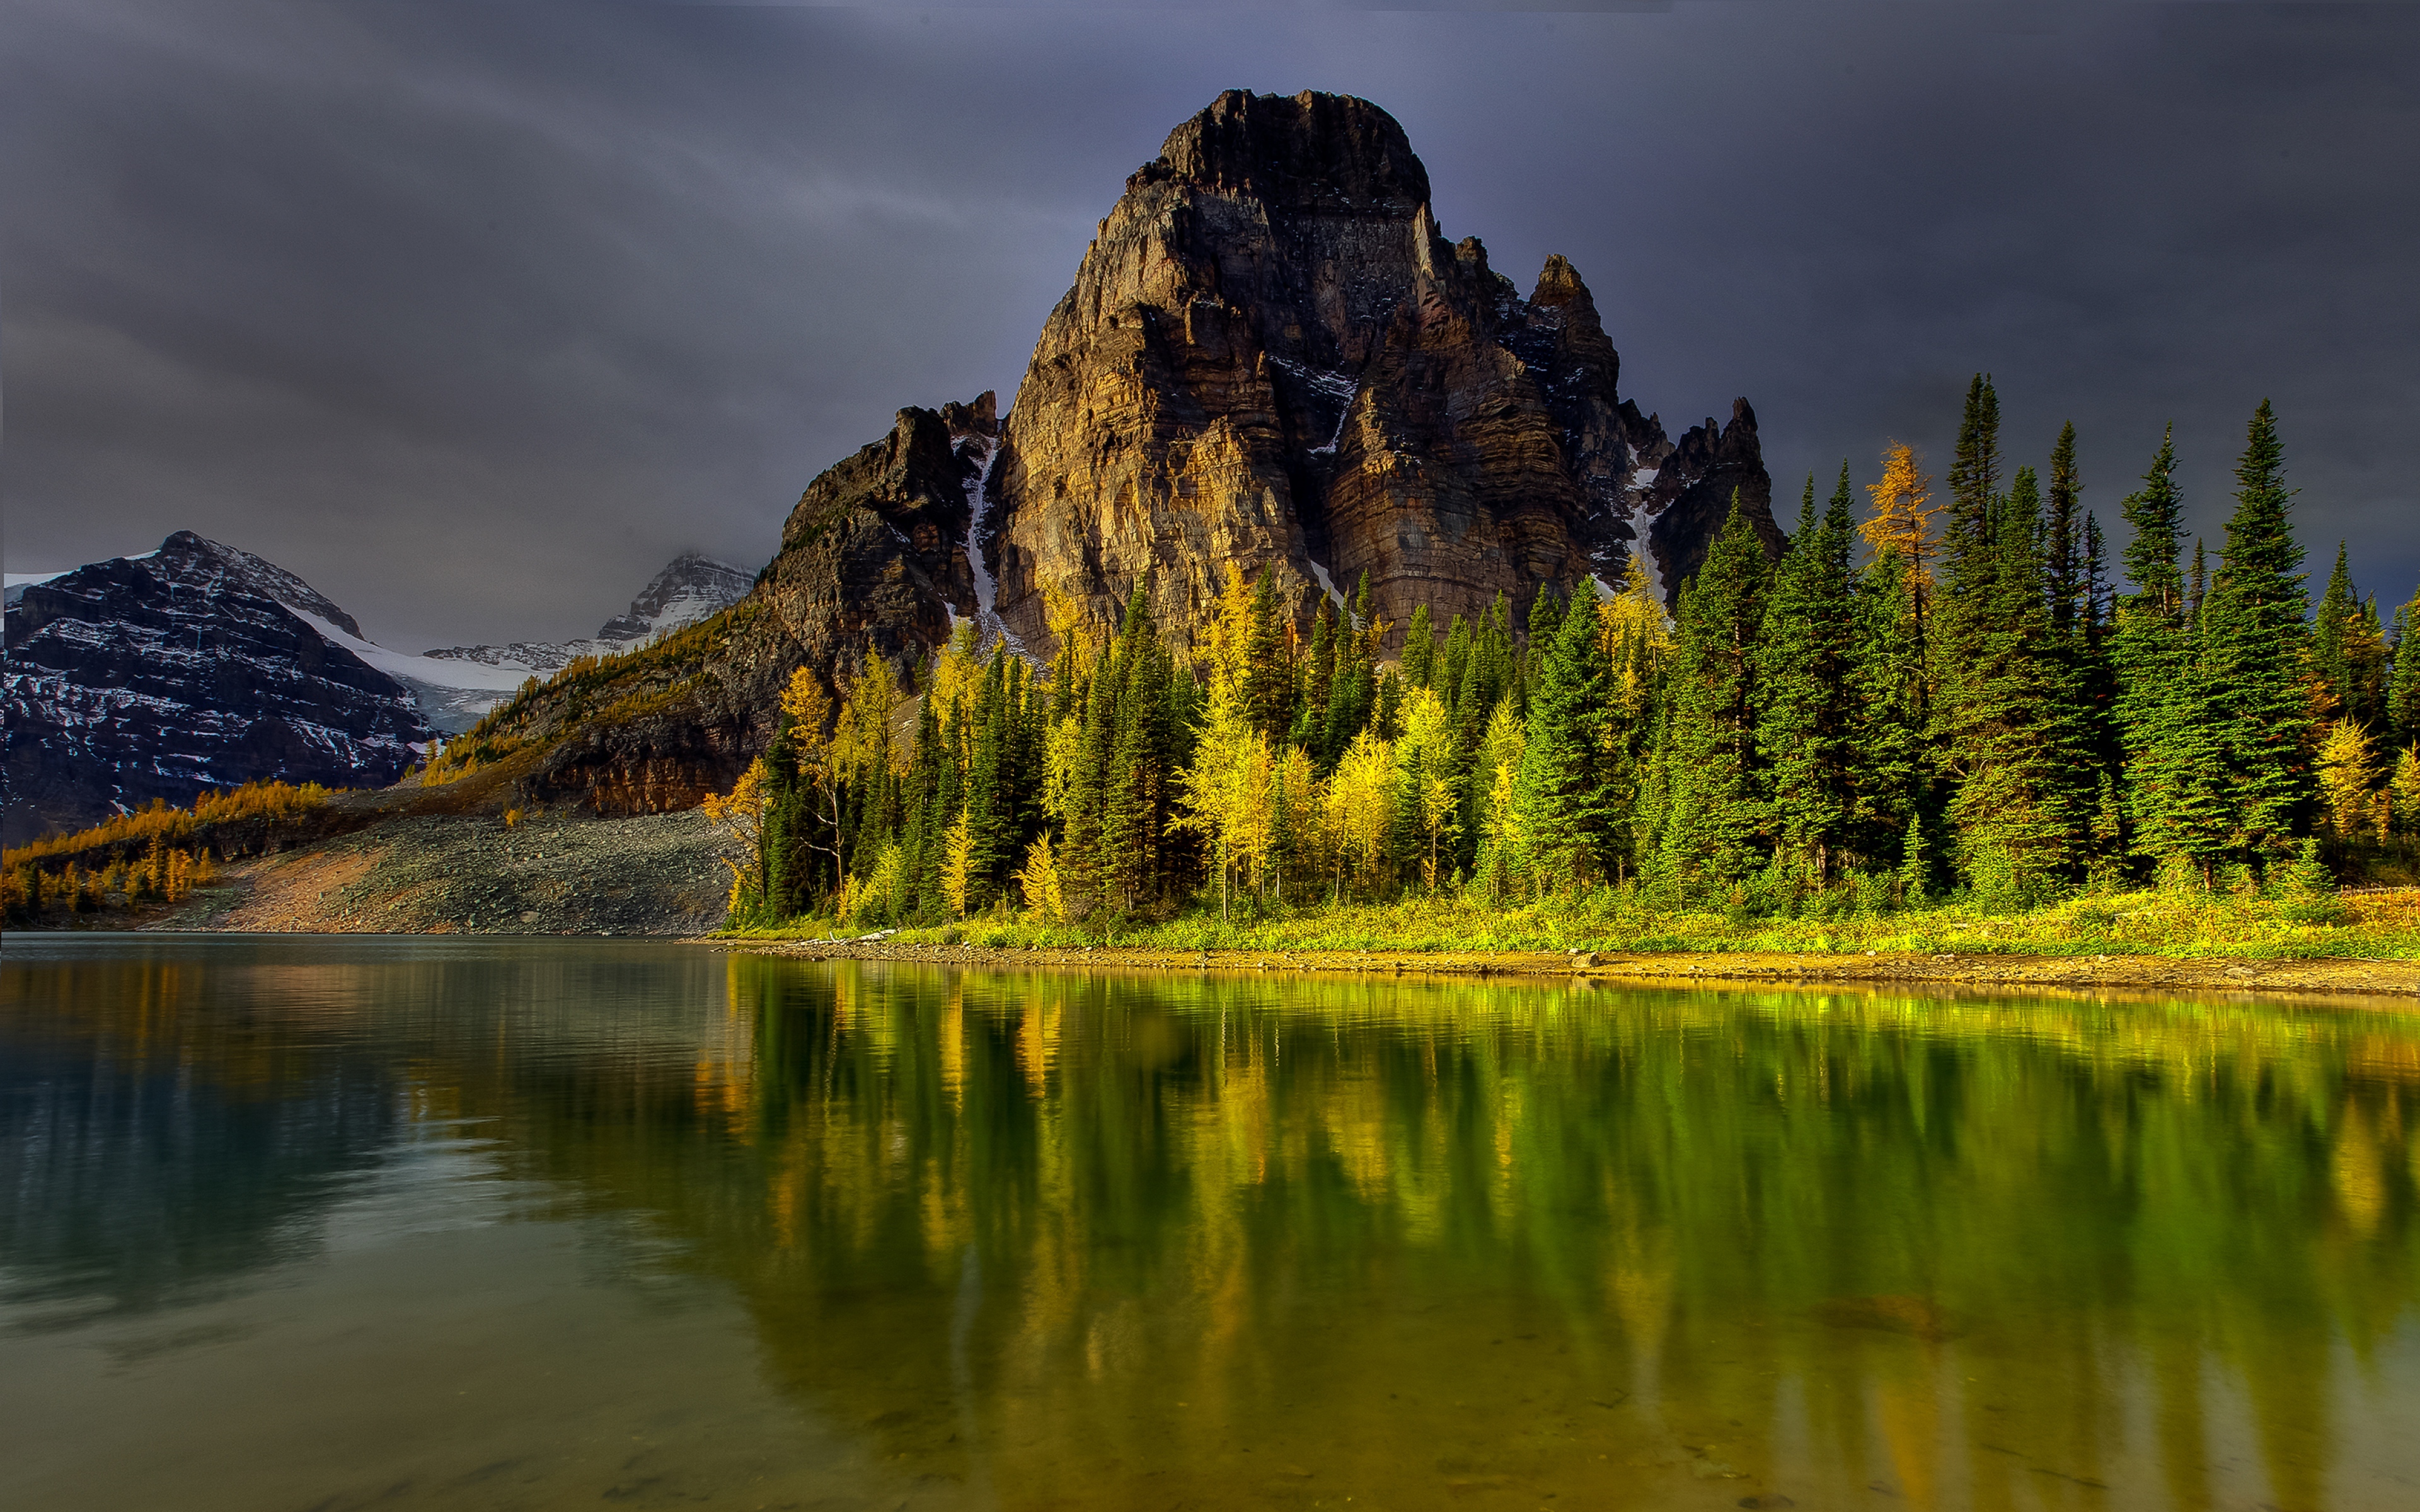 Обои на стол 1600 900. Горы, озеро лес 1920 США. Природа Северной Америки. Ергаки. Красивый пейзаж.